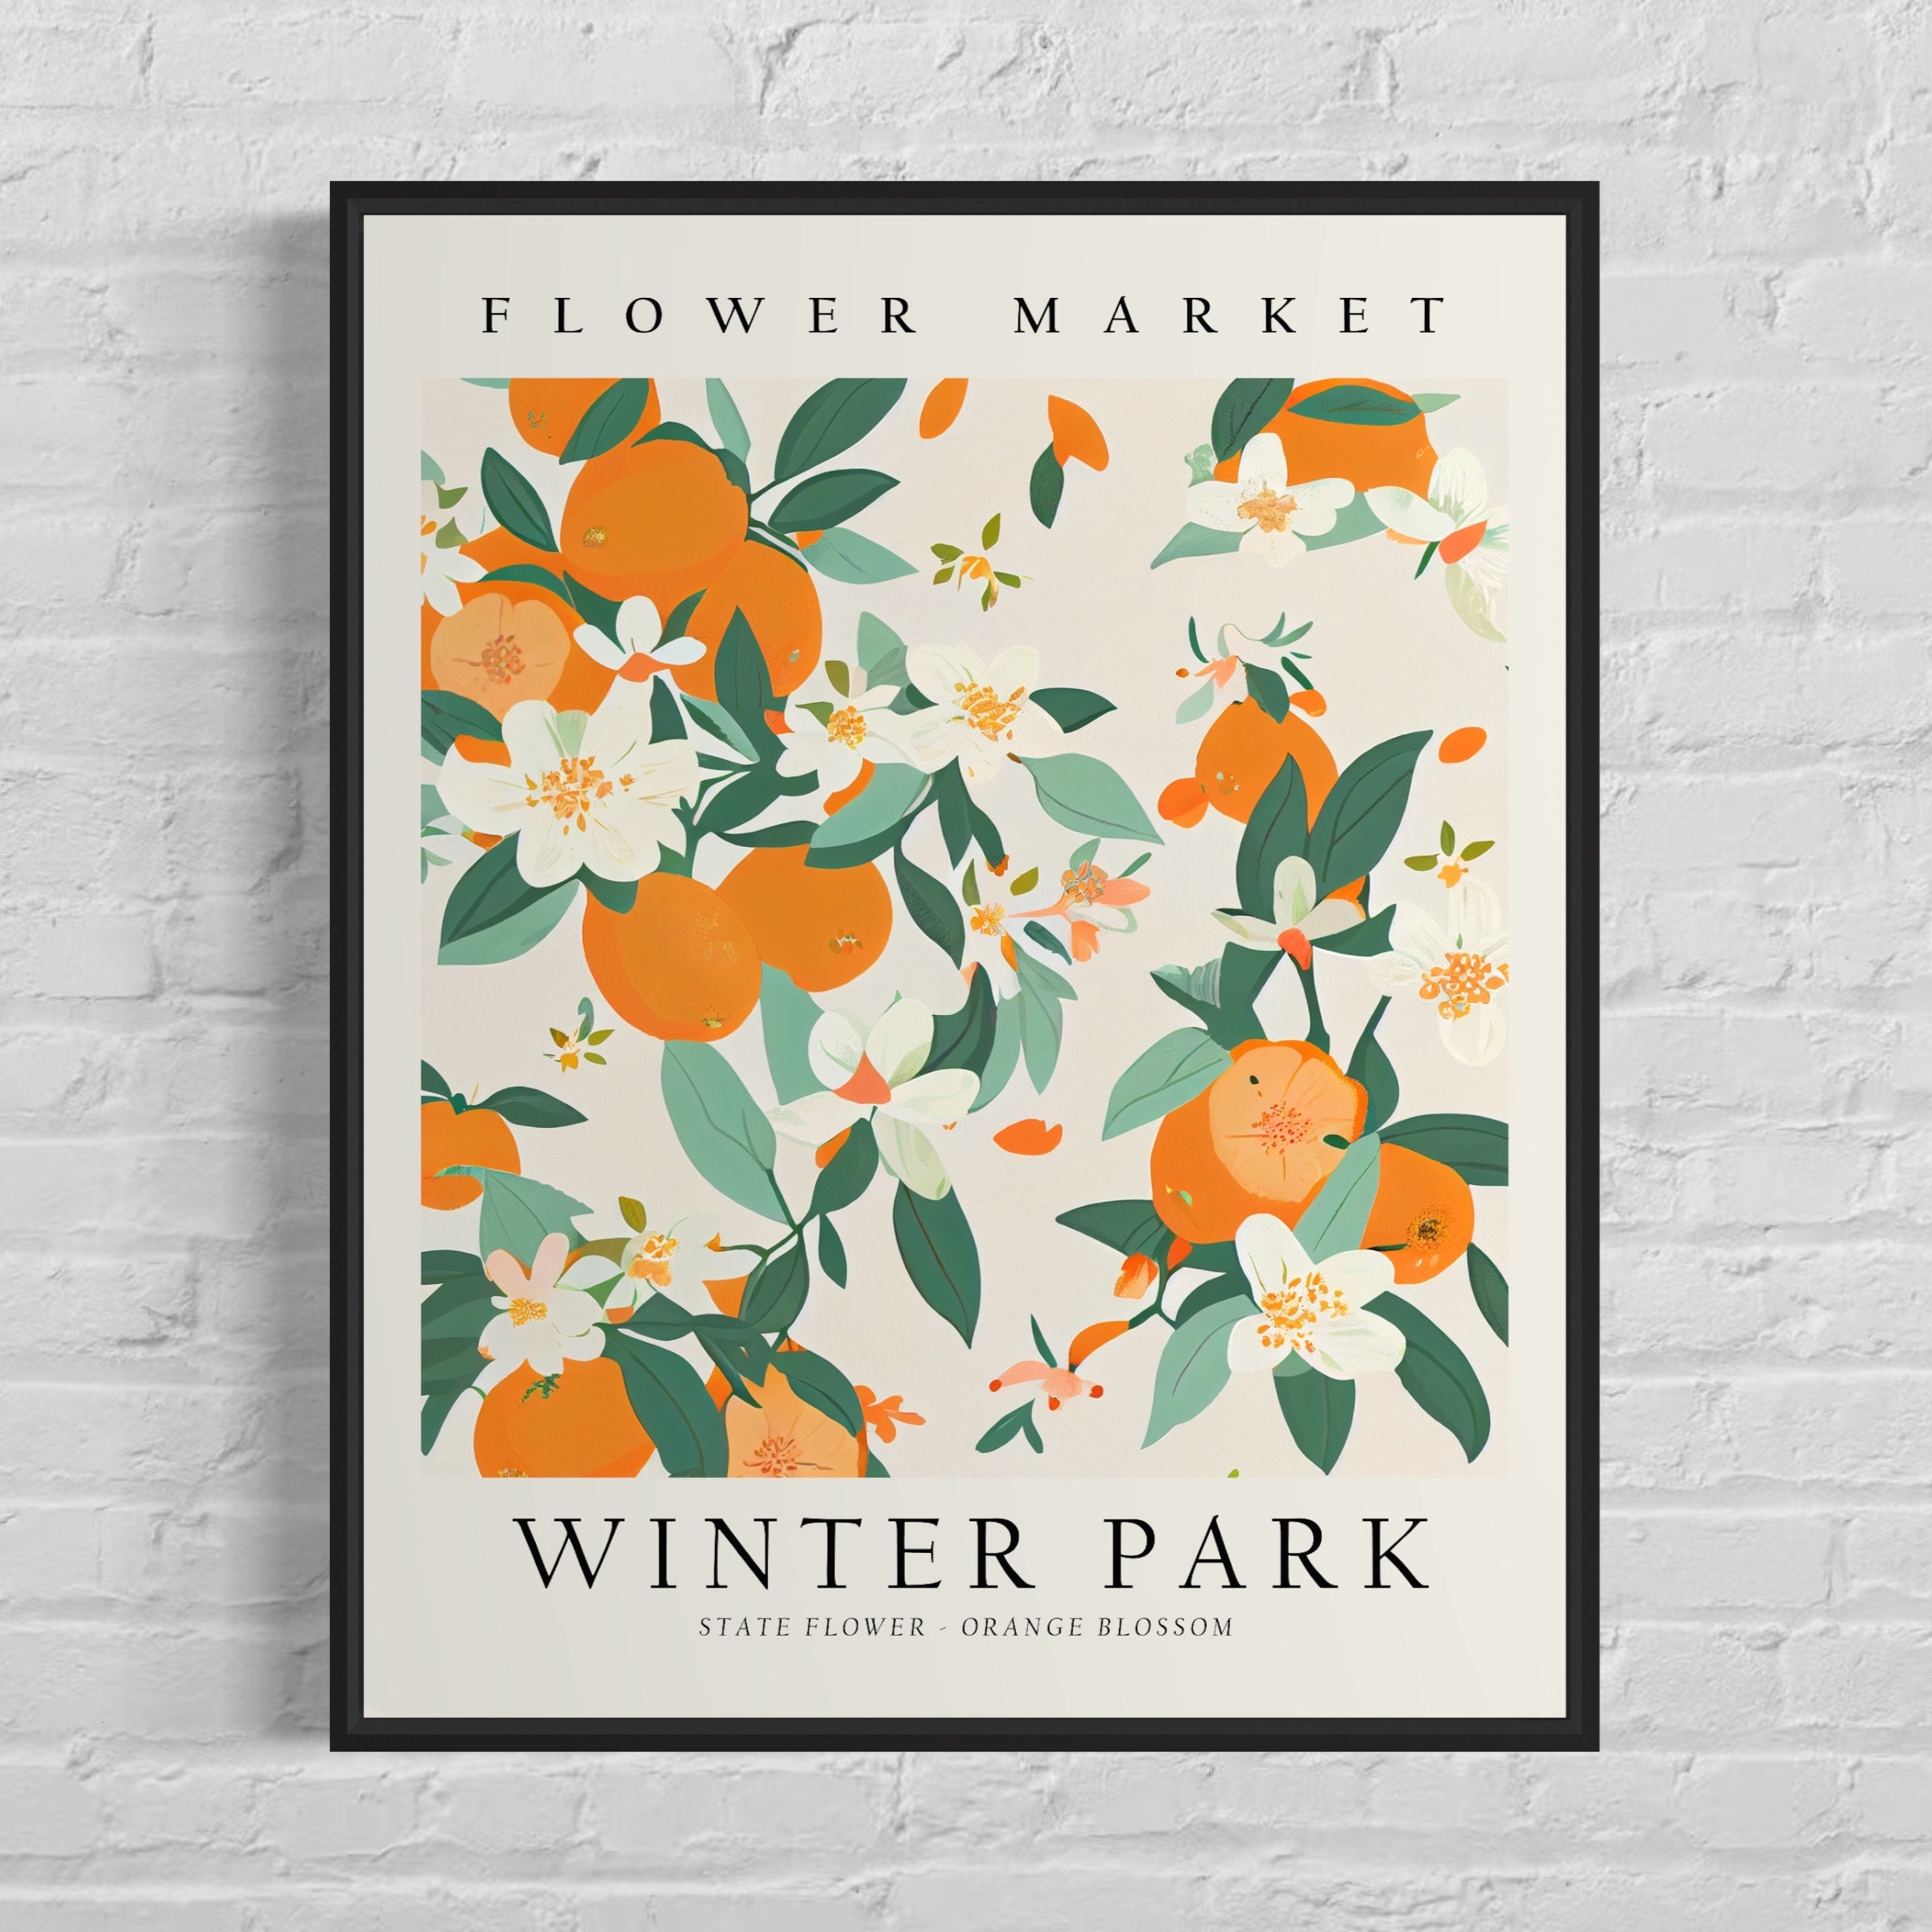 Vintage Postcards of Winter Park, Florida